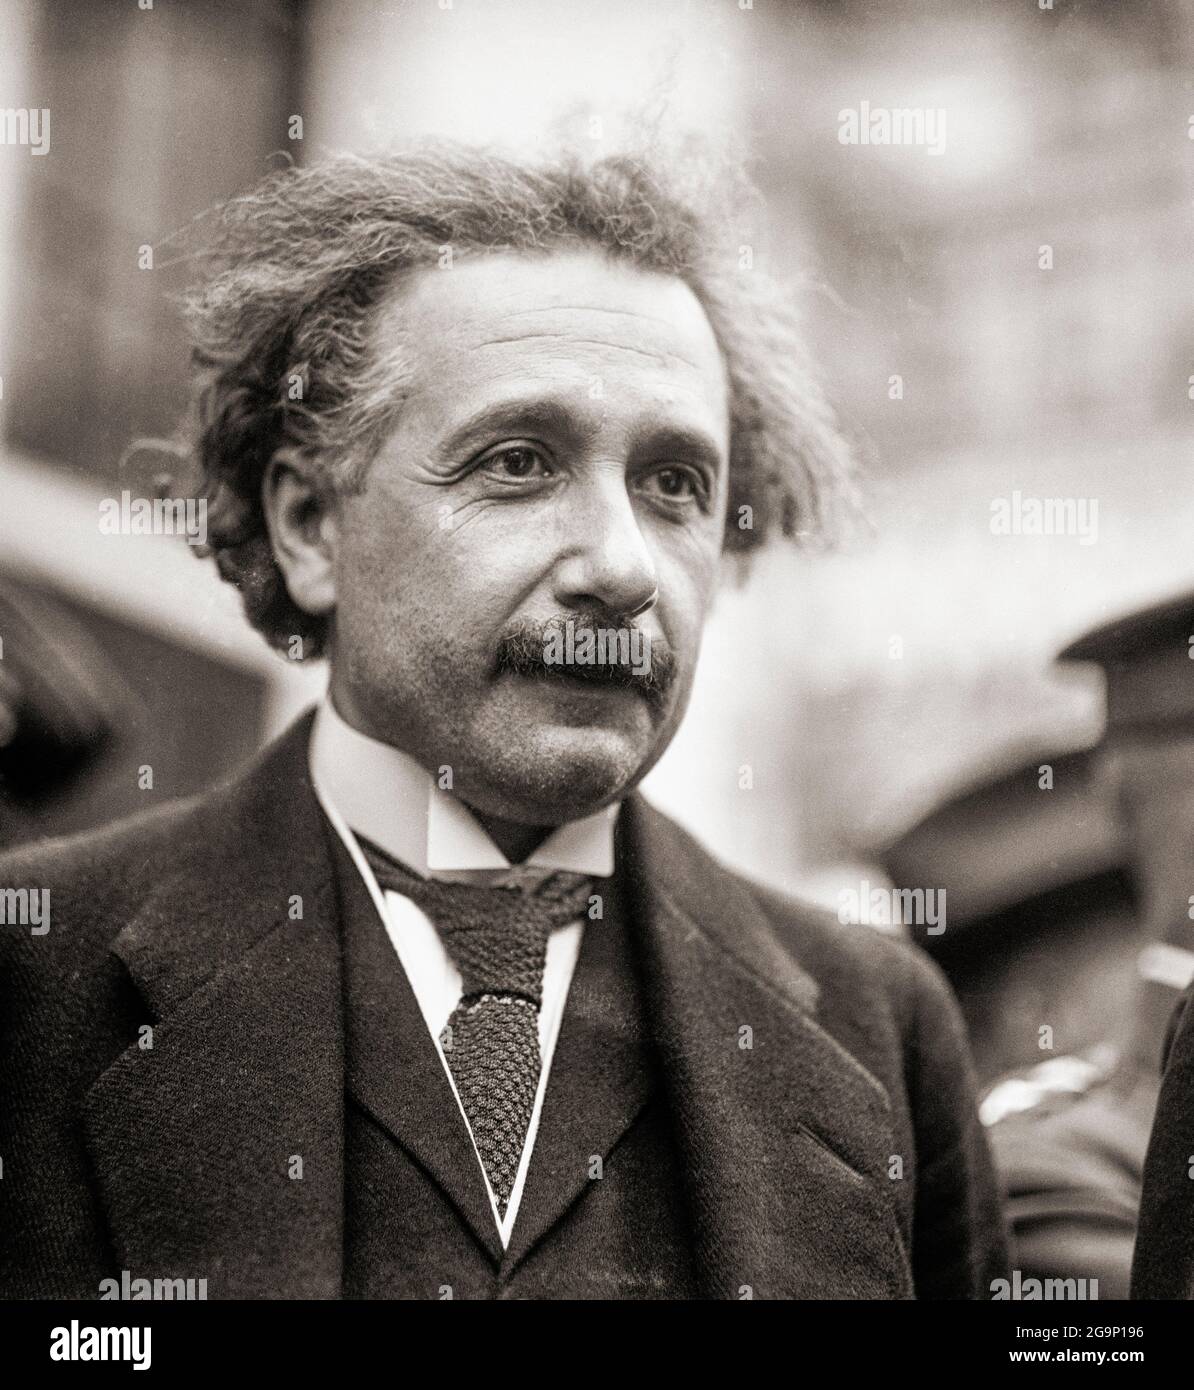 Albert Einstein, 1879 - 1955. Fisico teorico di origine tedesca. Tra i molti risultati ha posato teorie di Relatività Generale, Relatività Speciale, ed equivalenza massa-energia. Foto Stock